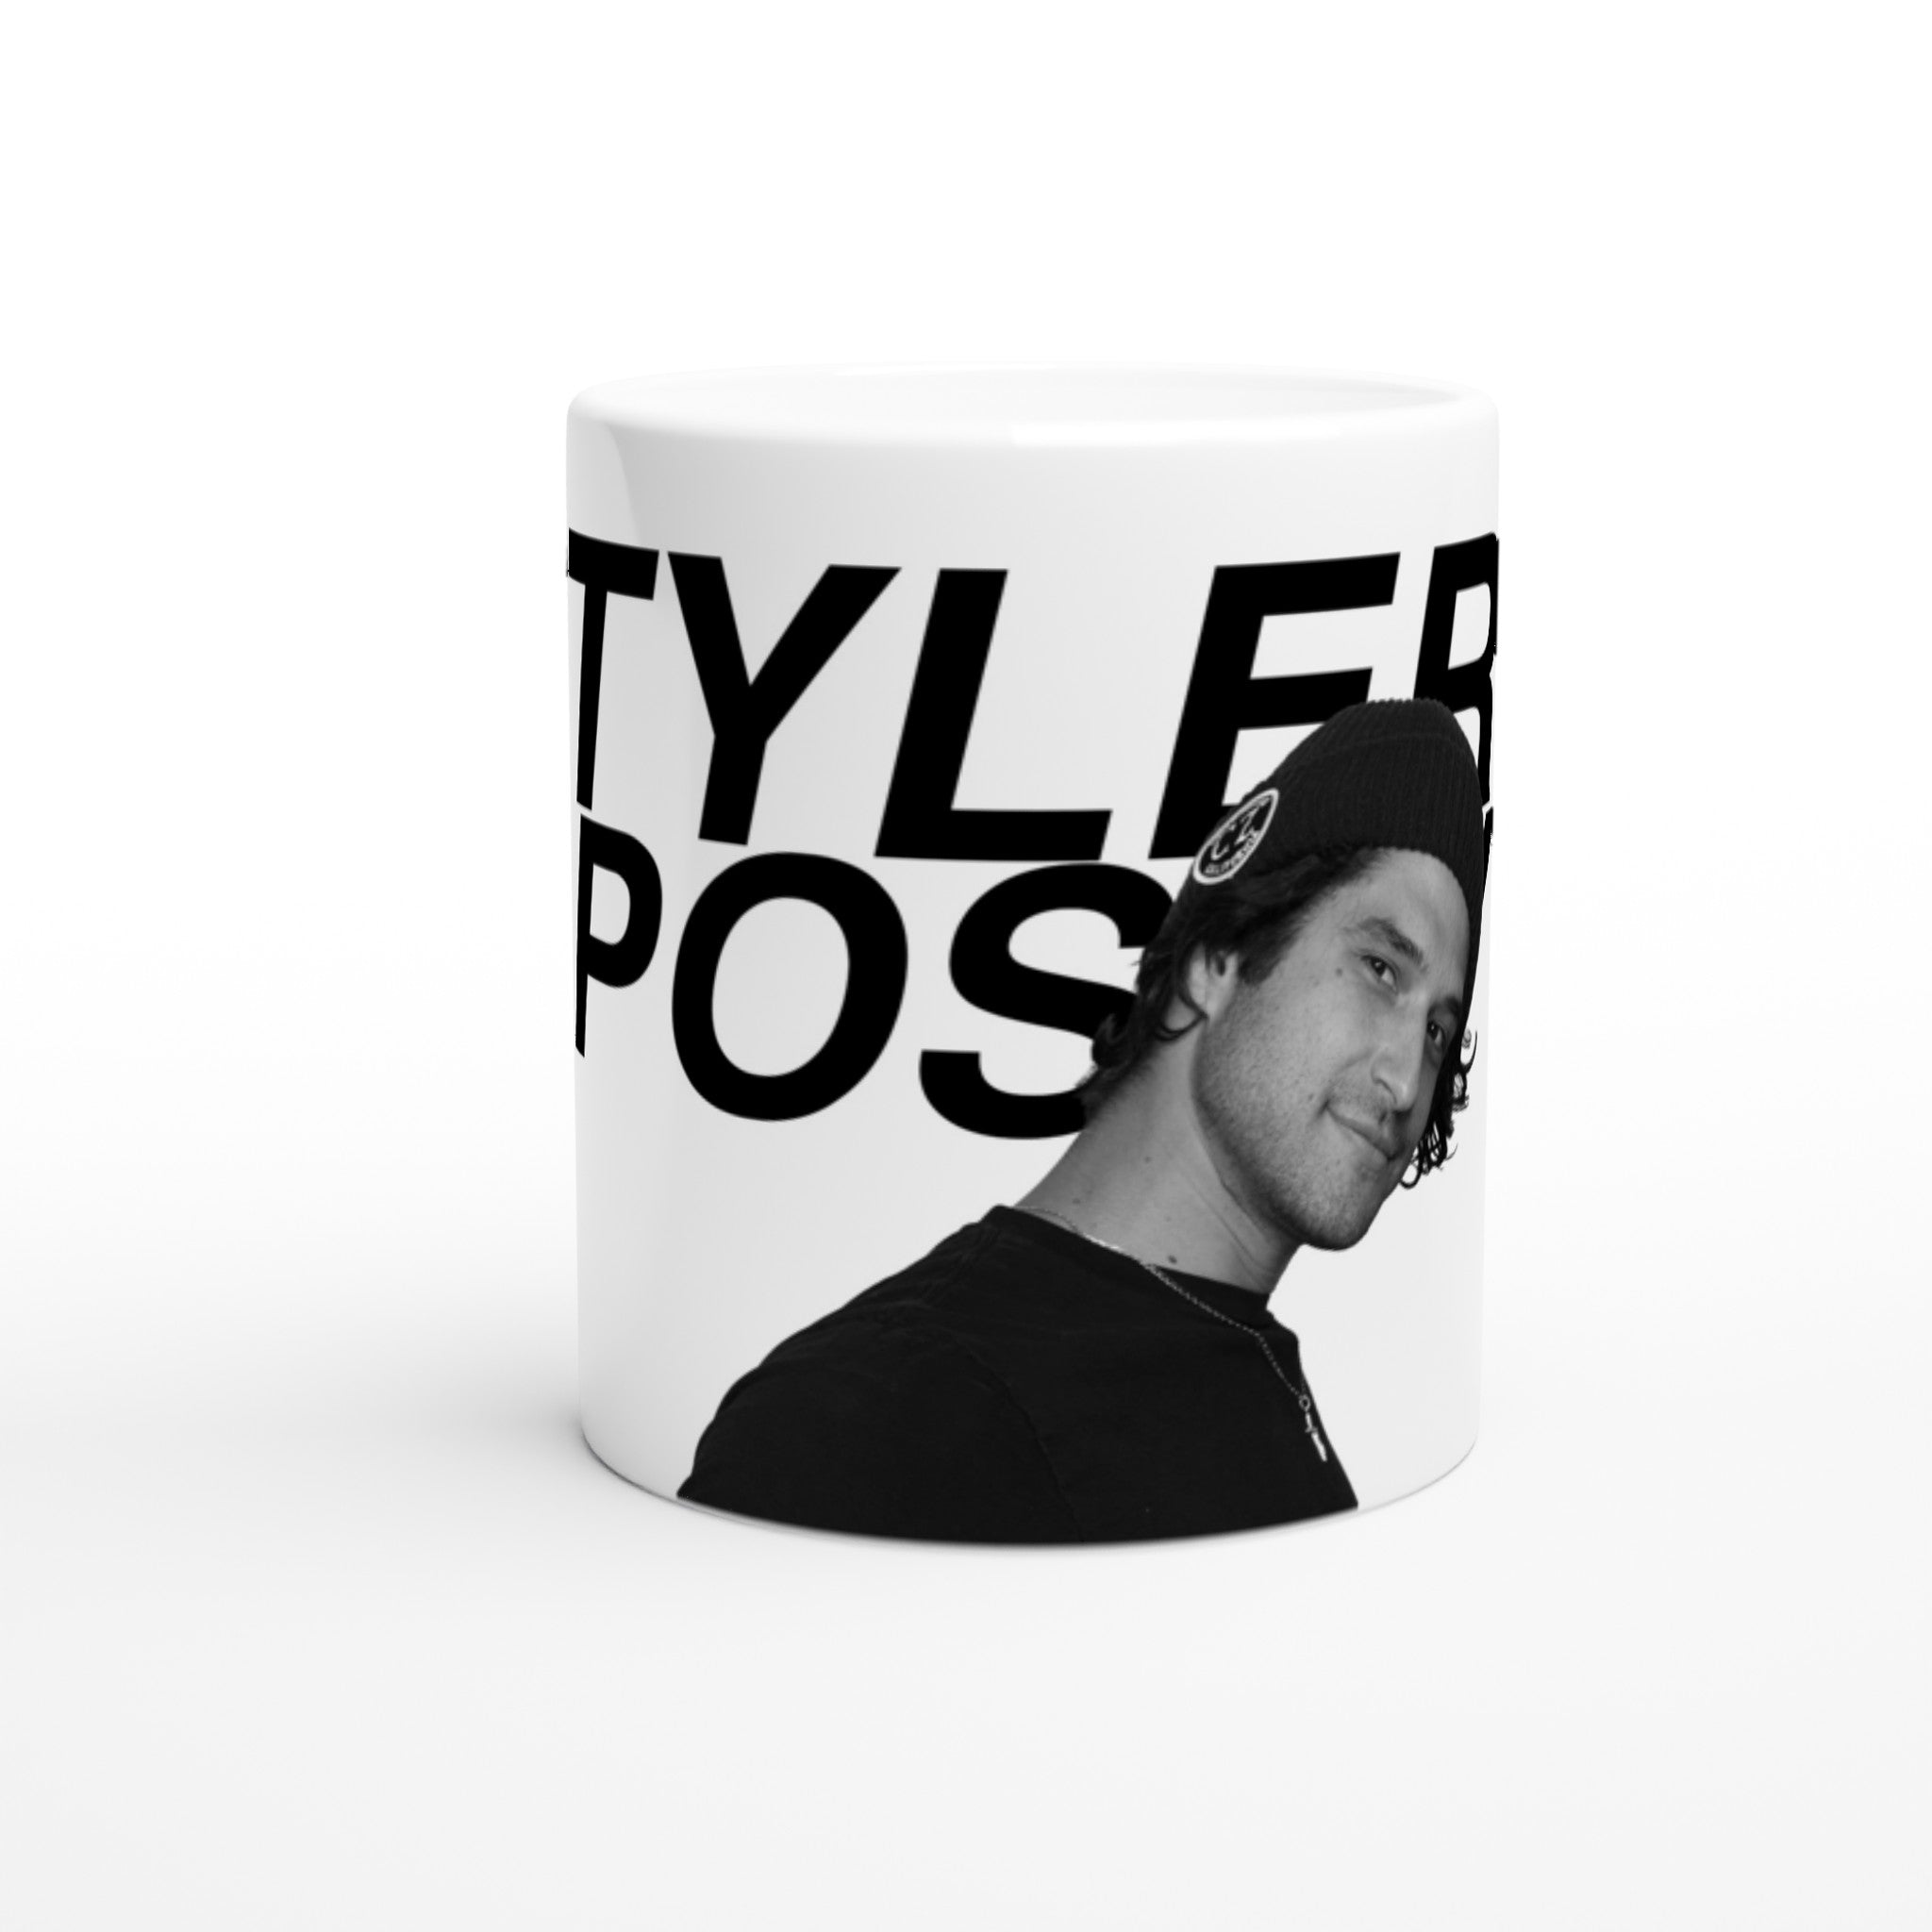 Mug TYLER POSEY